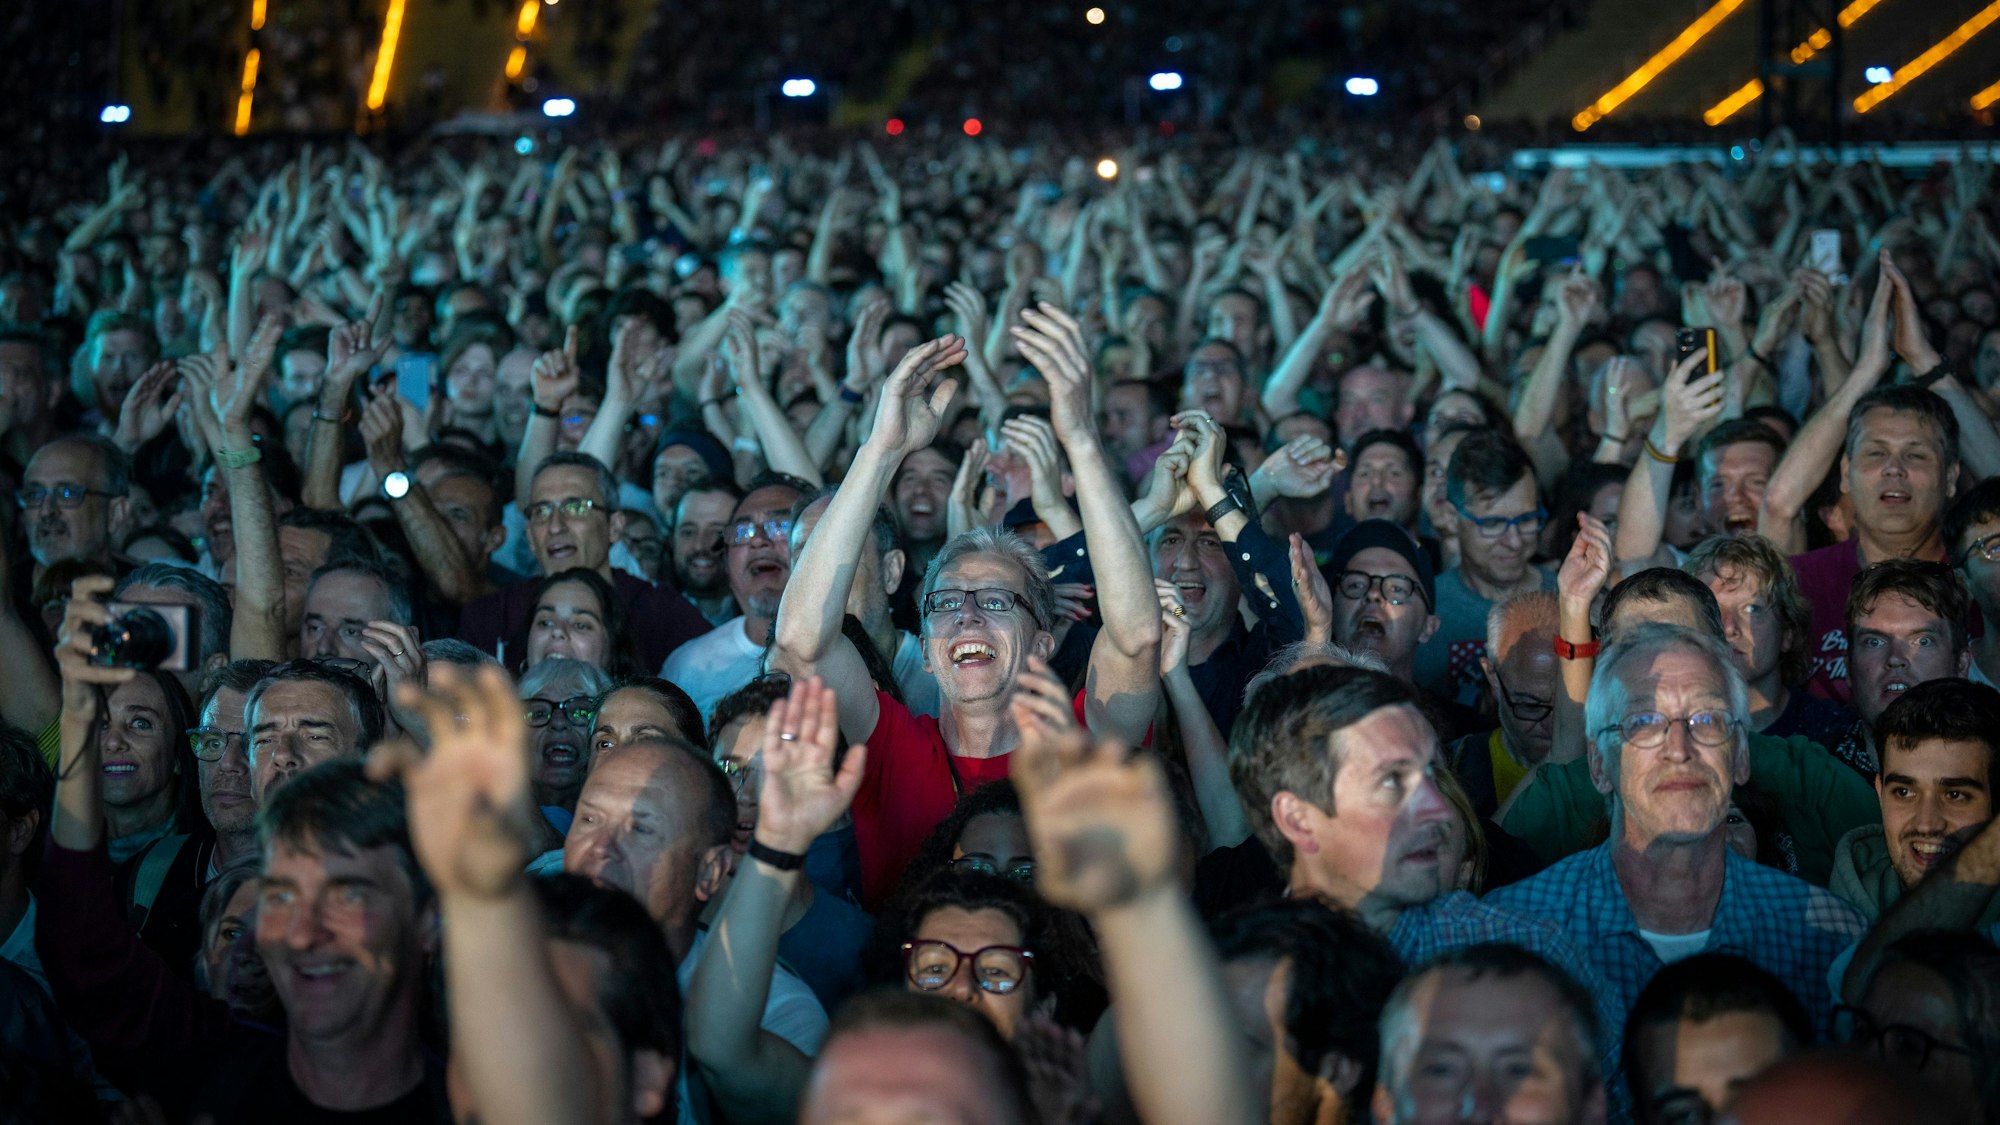 Das Bild zeigt eine Menge feiernder Fans bei einem Musikkonzert.